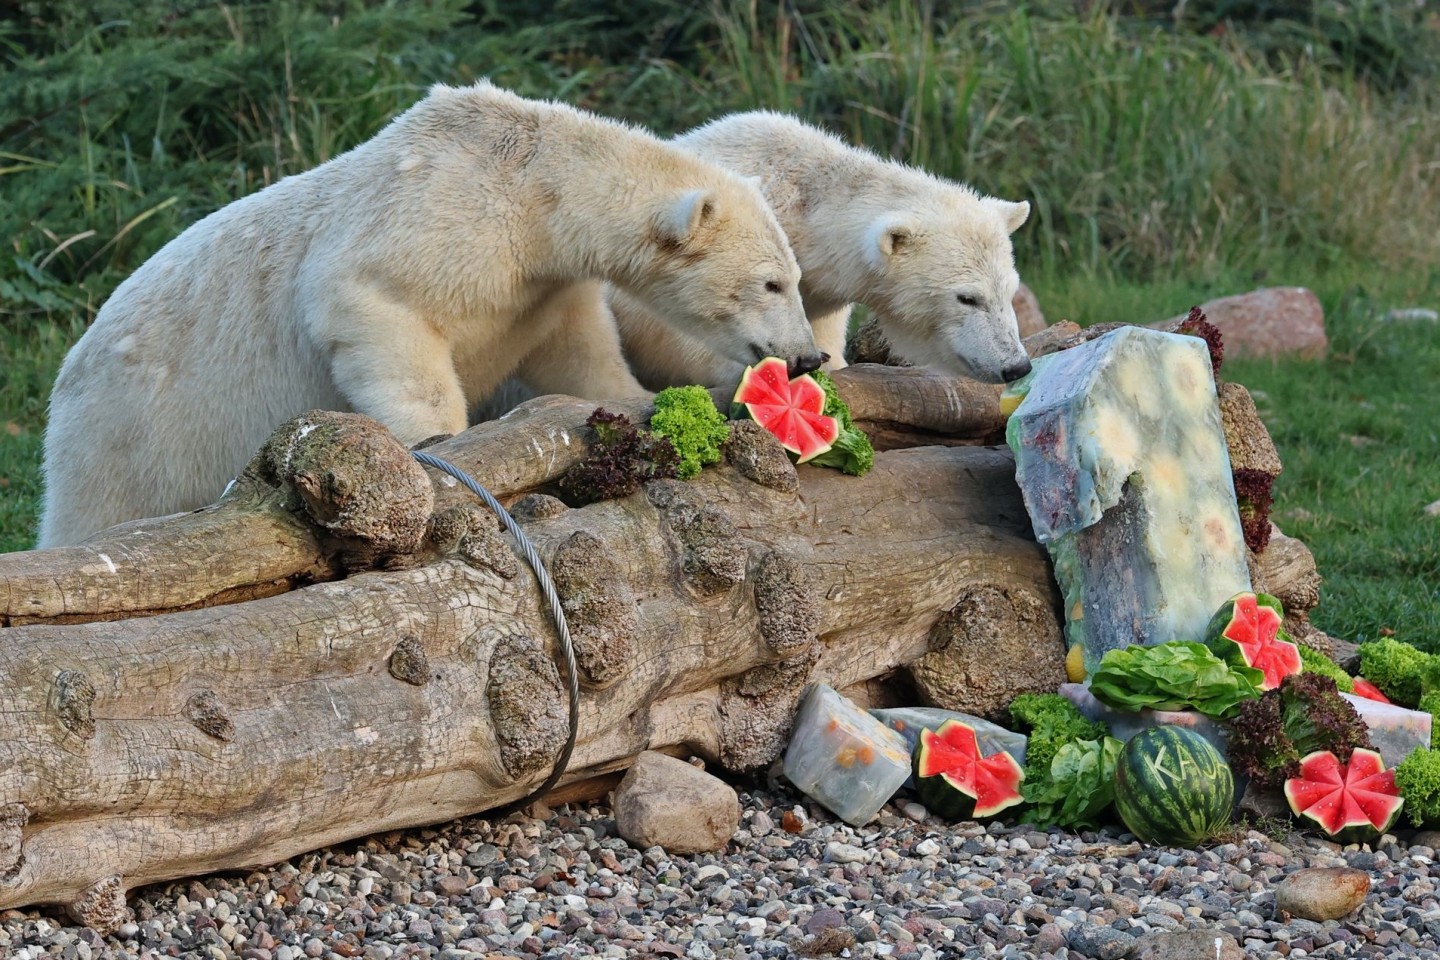 Die Eisbärenzwillinge Kaja und Skadi bekommen zu ihrem 1. Geburtstag Eistorten, eine davon symbolisiert die Zahl 1.